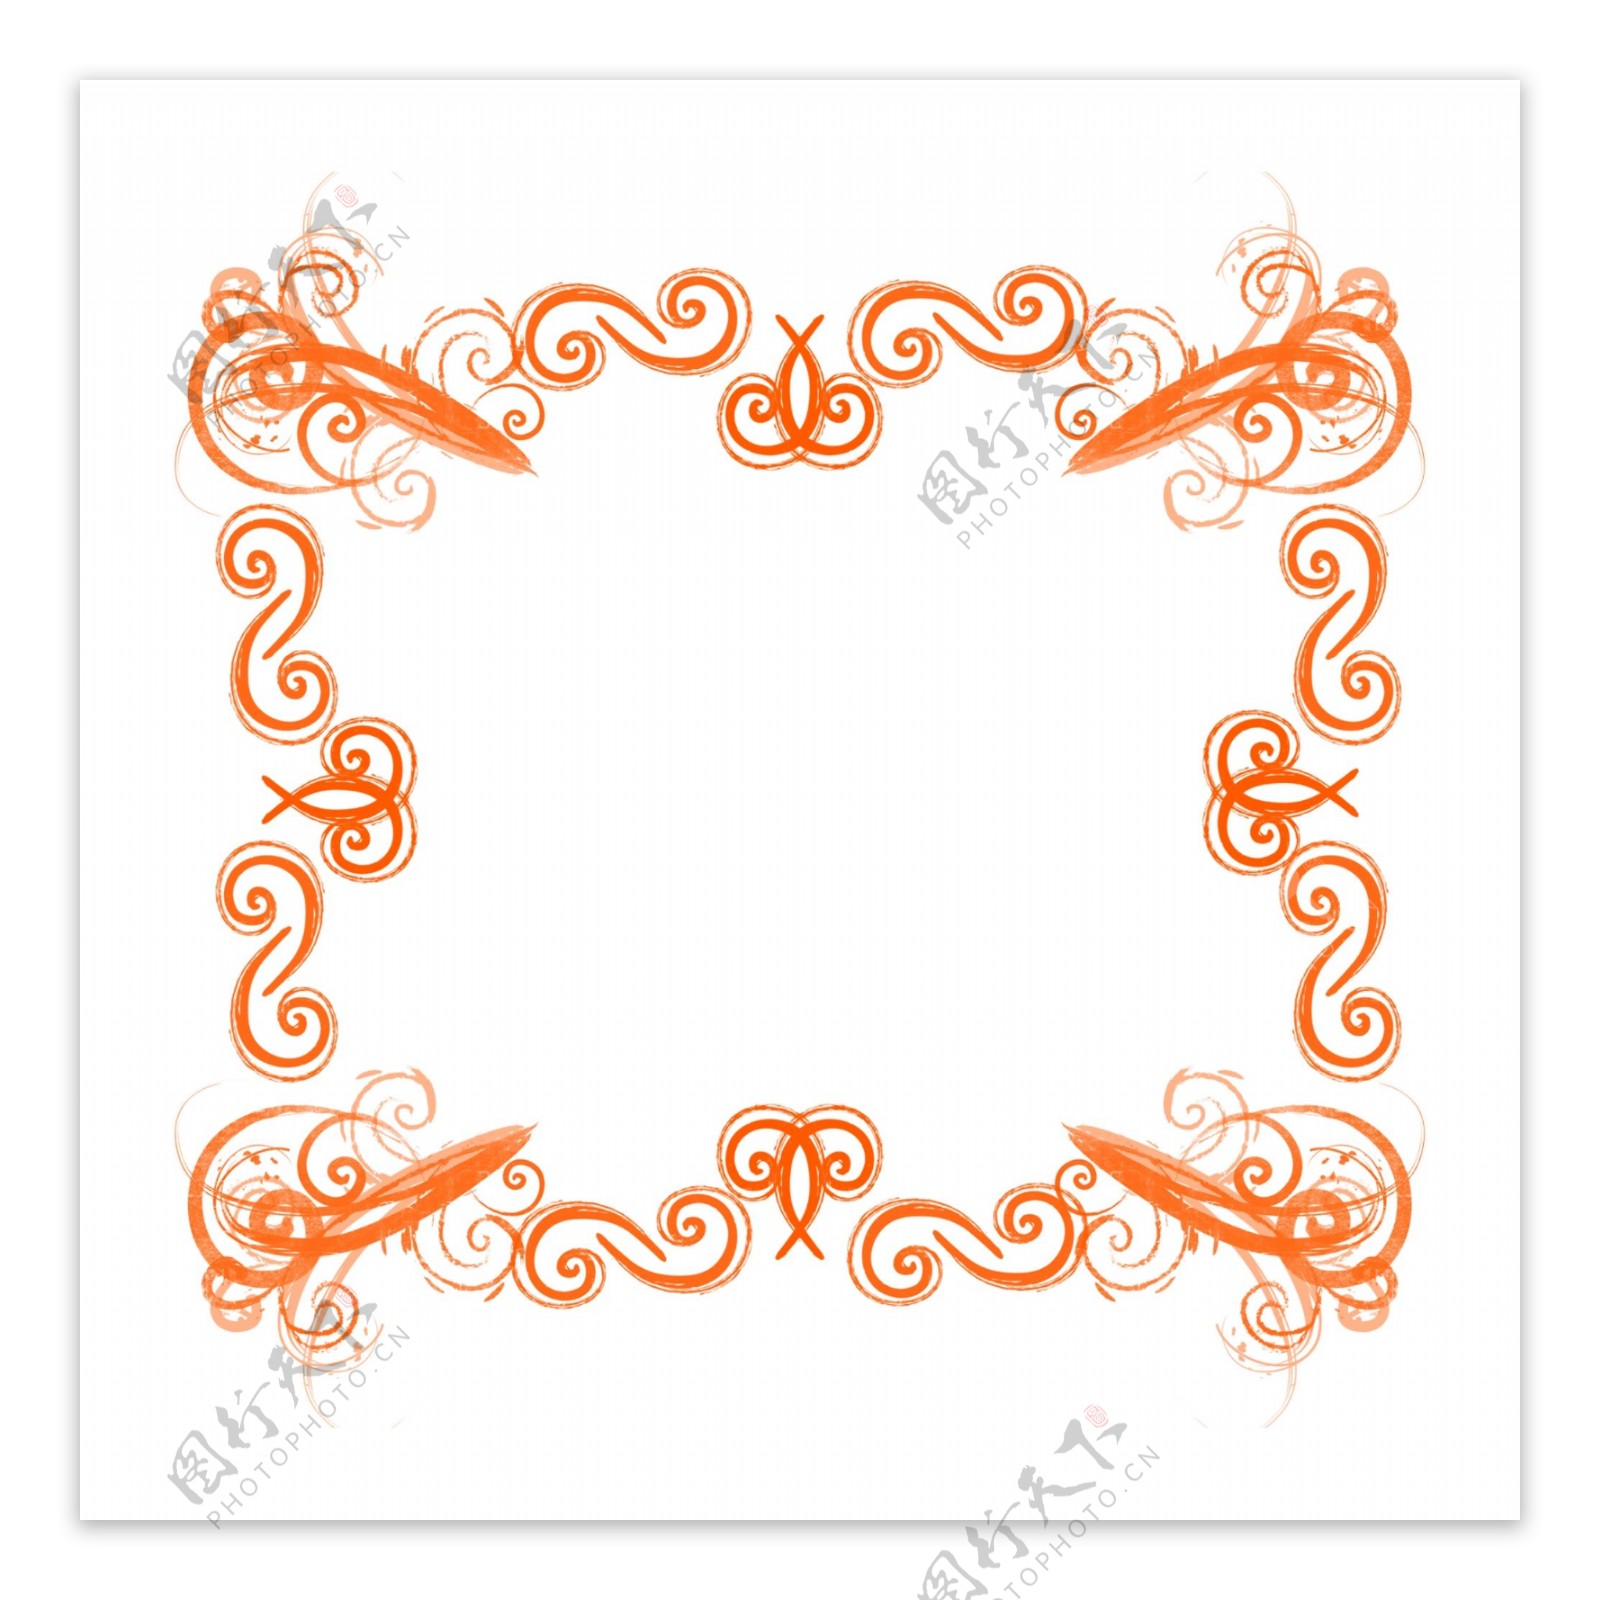 原创欧式复杂边框套图橙色可商用元素